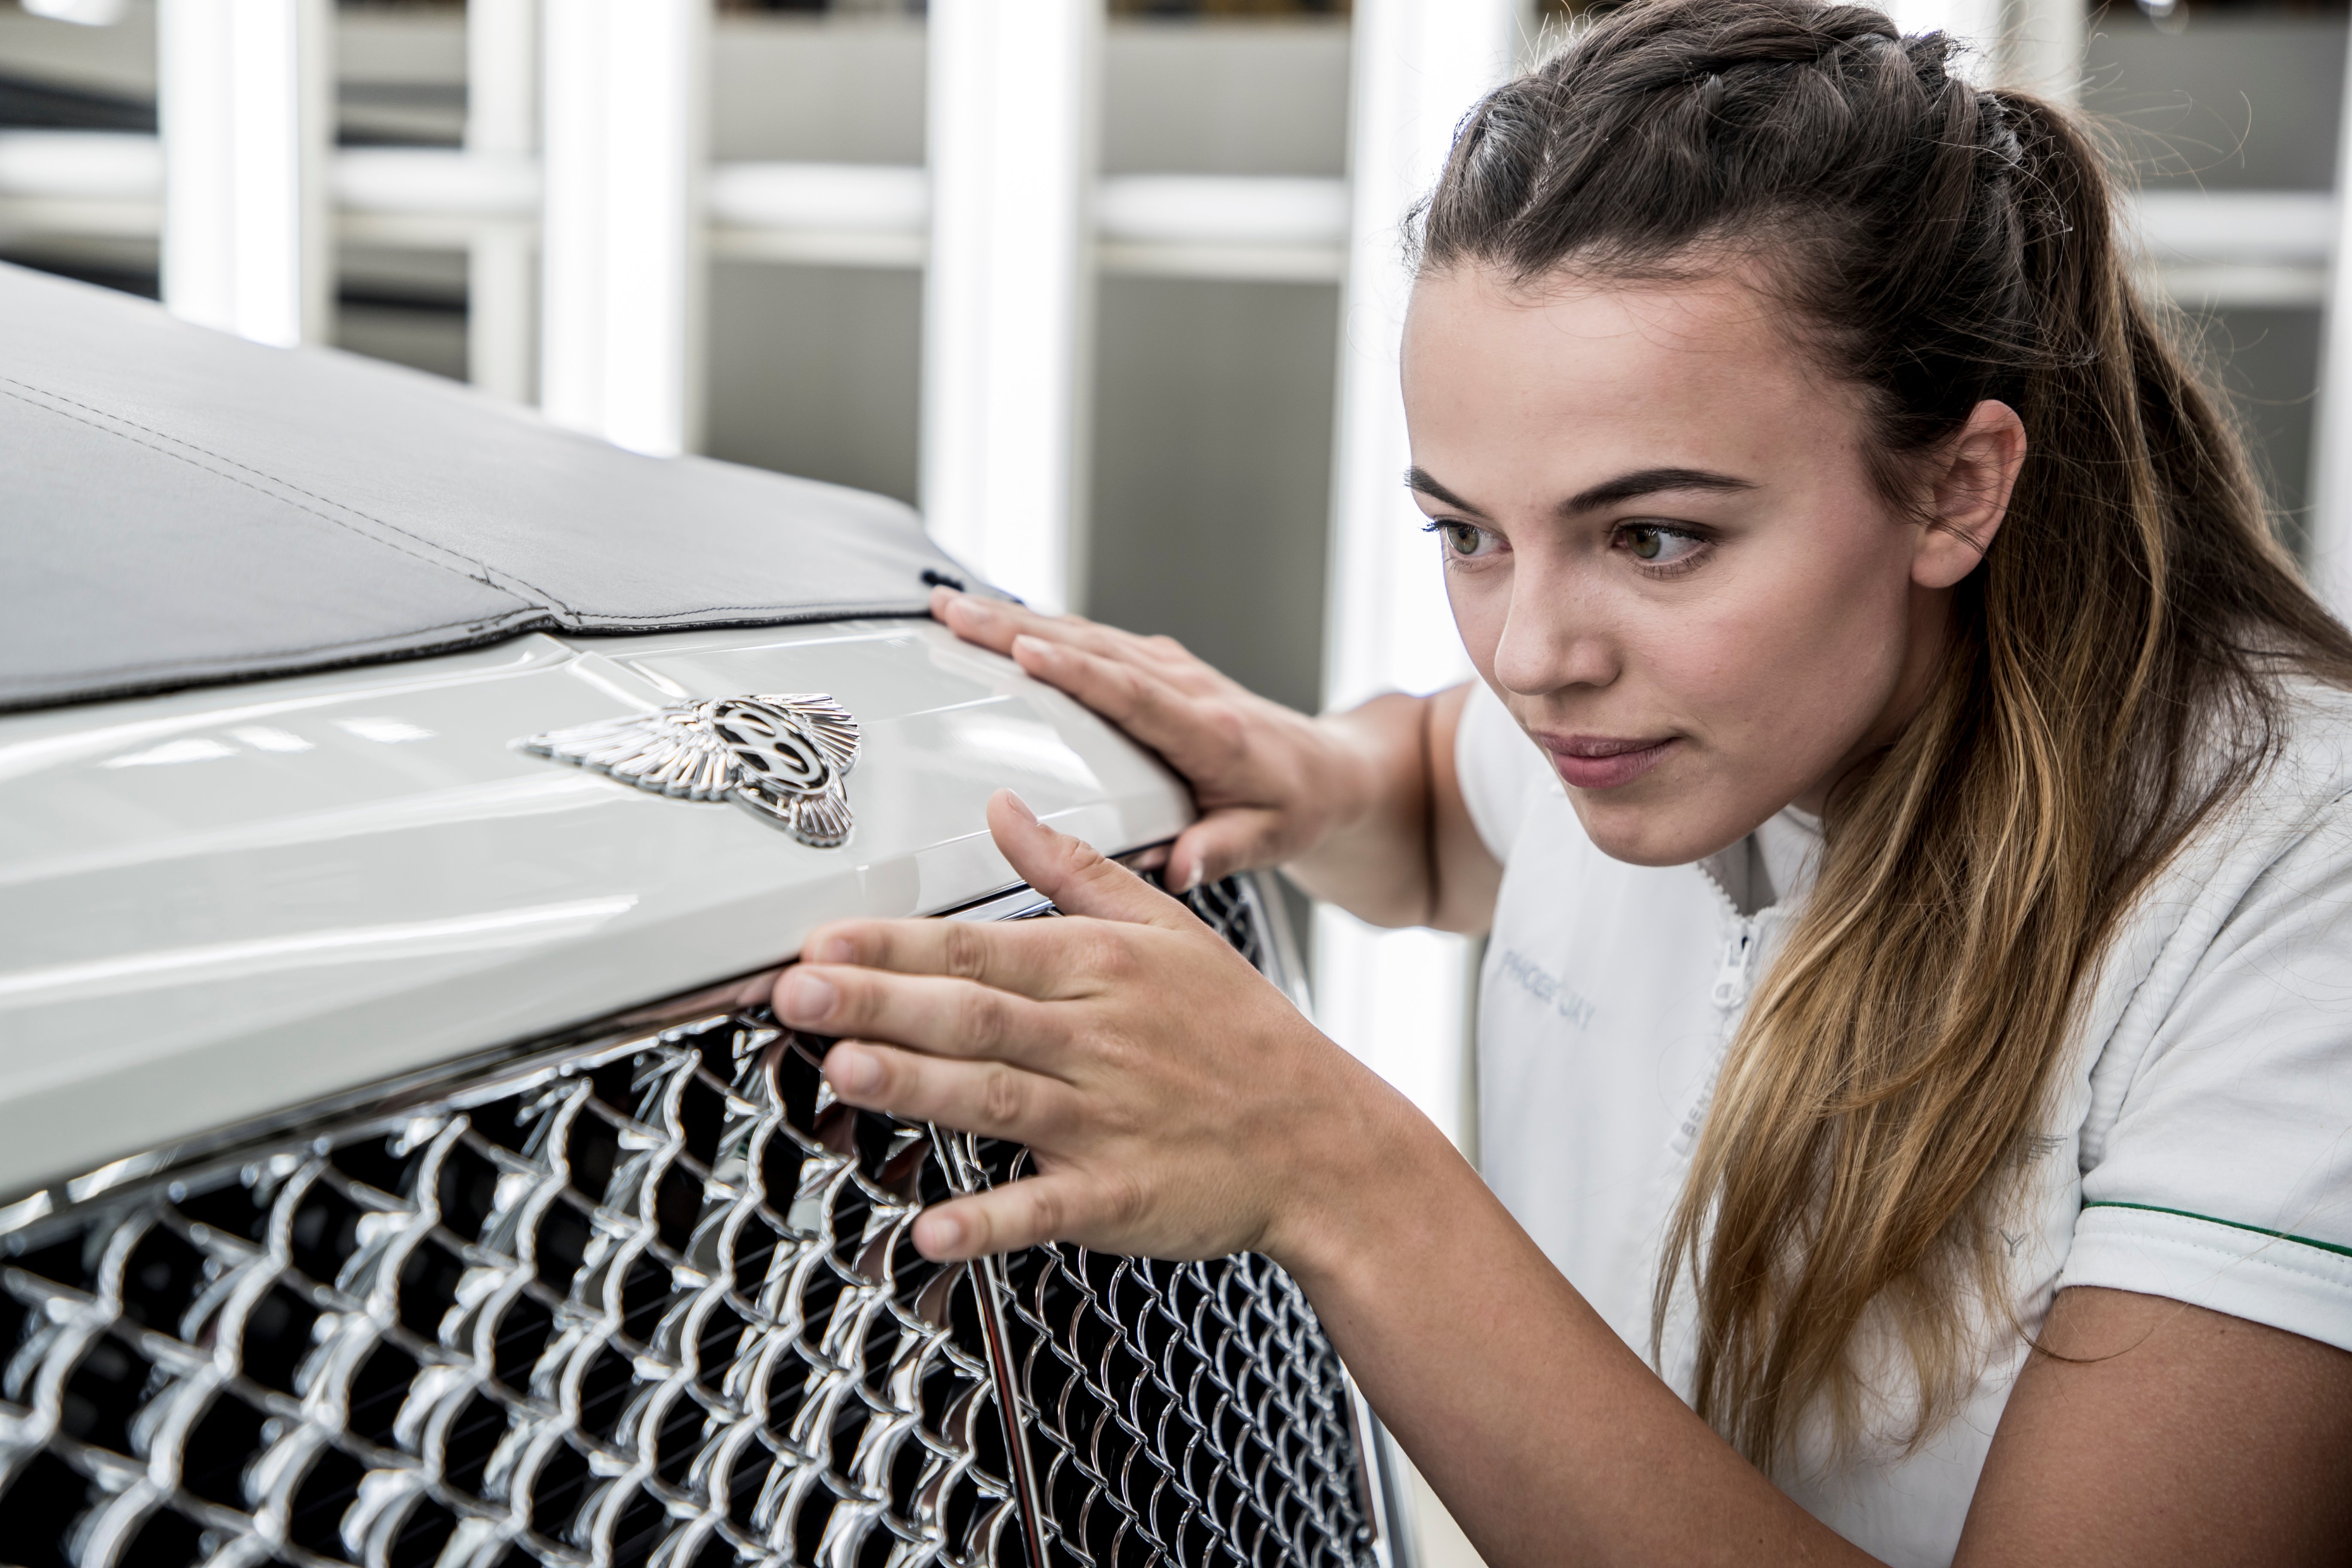 Bentley motors opens 2018 future talent recruitment